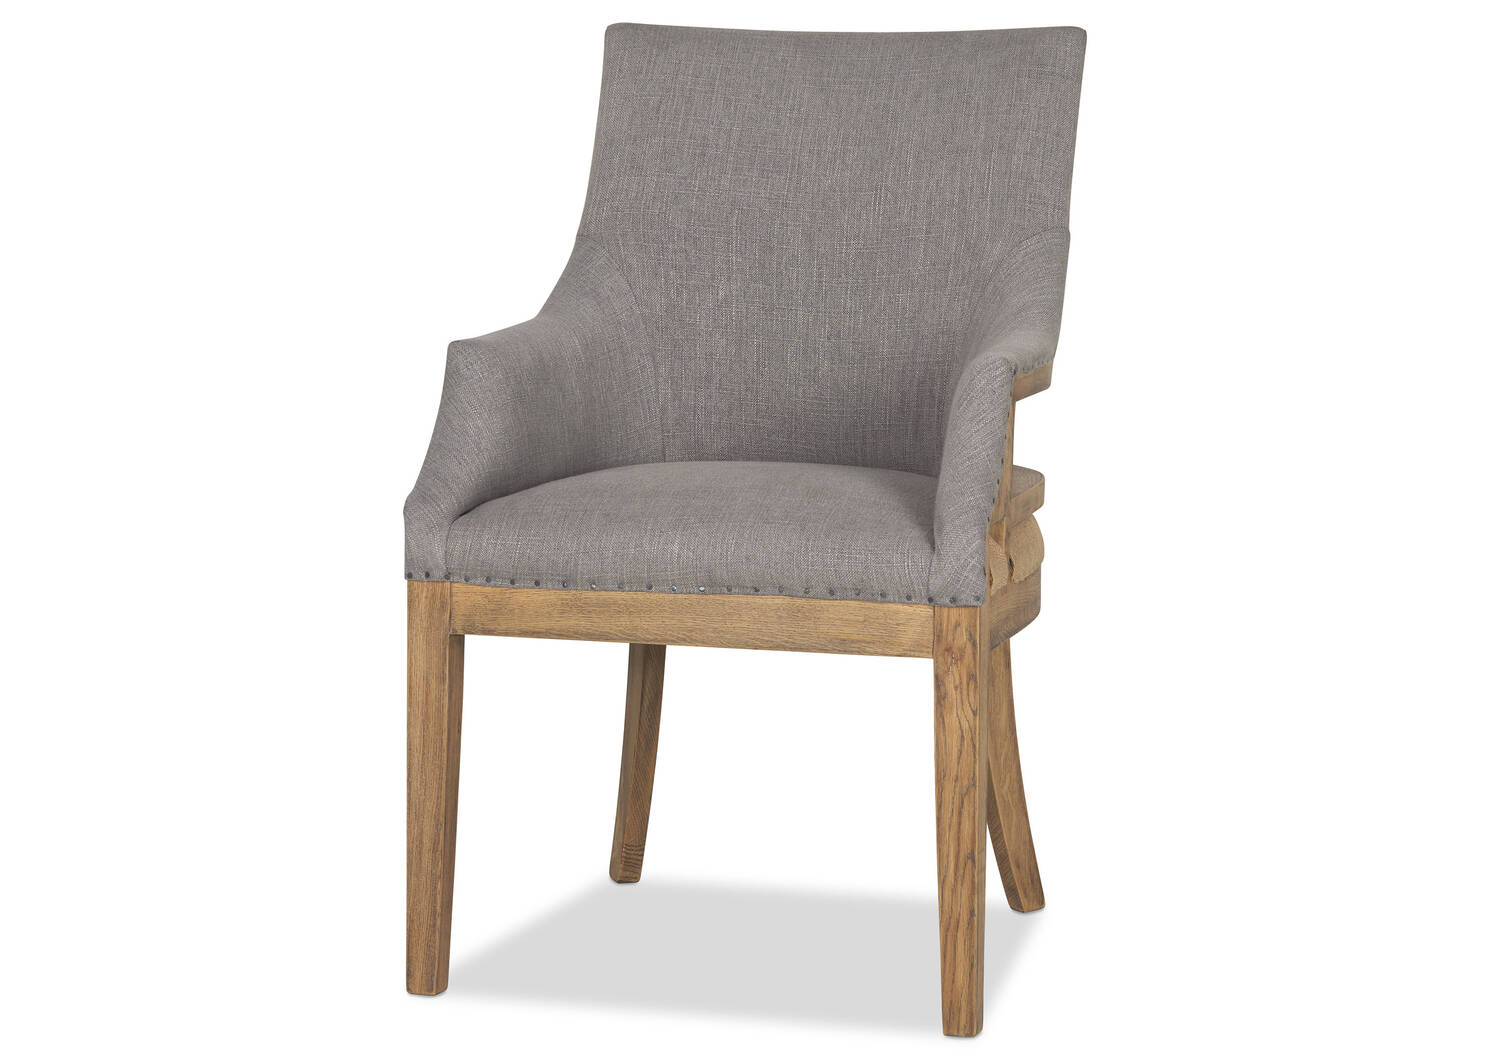 Decatur Host Chair -Nantucket Grey